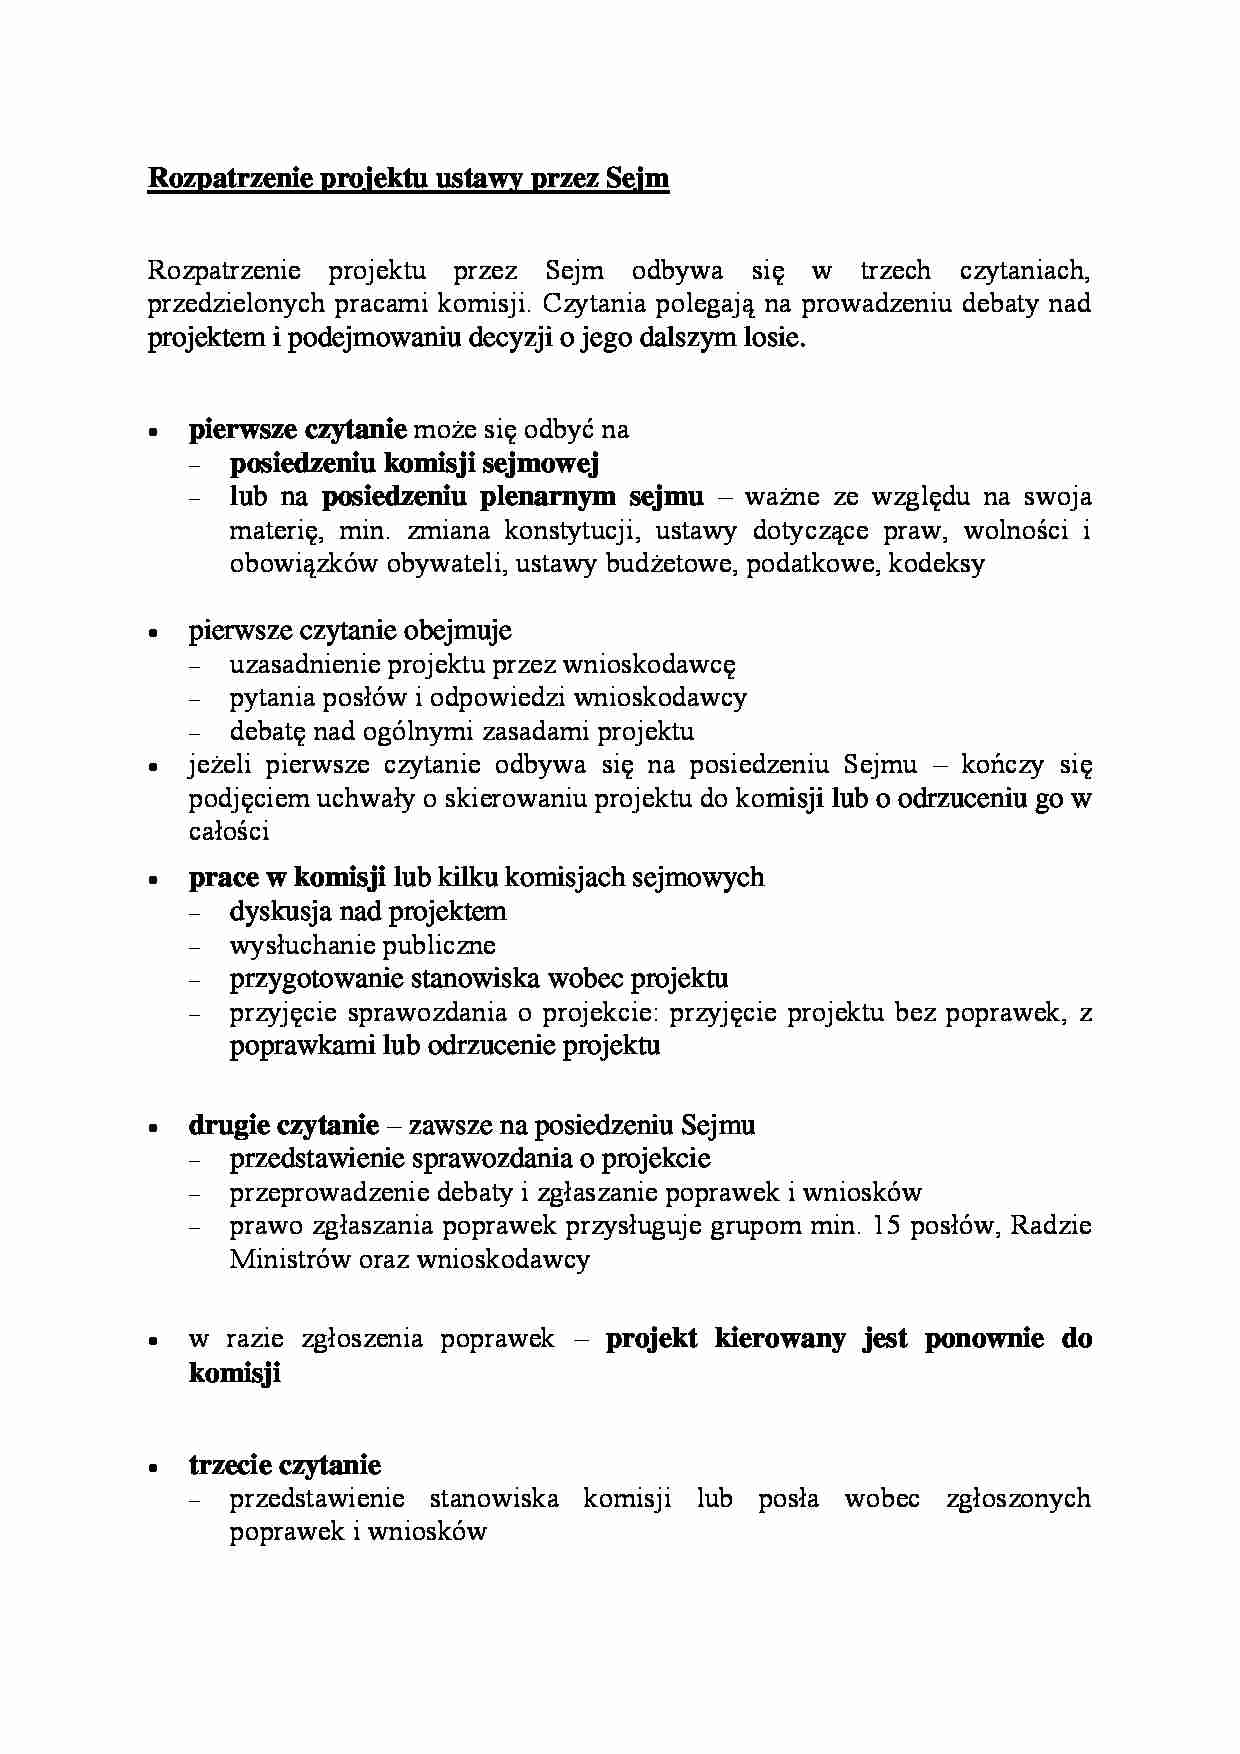 Rozpatrzenie projektu ustawy przez Sejm - omówienie - strona 1